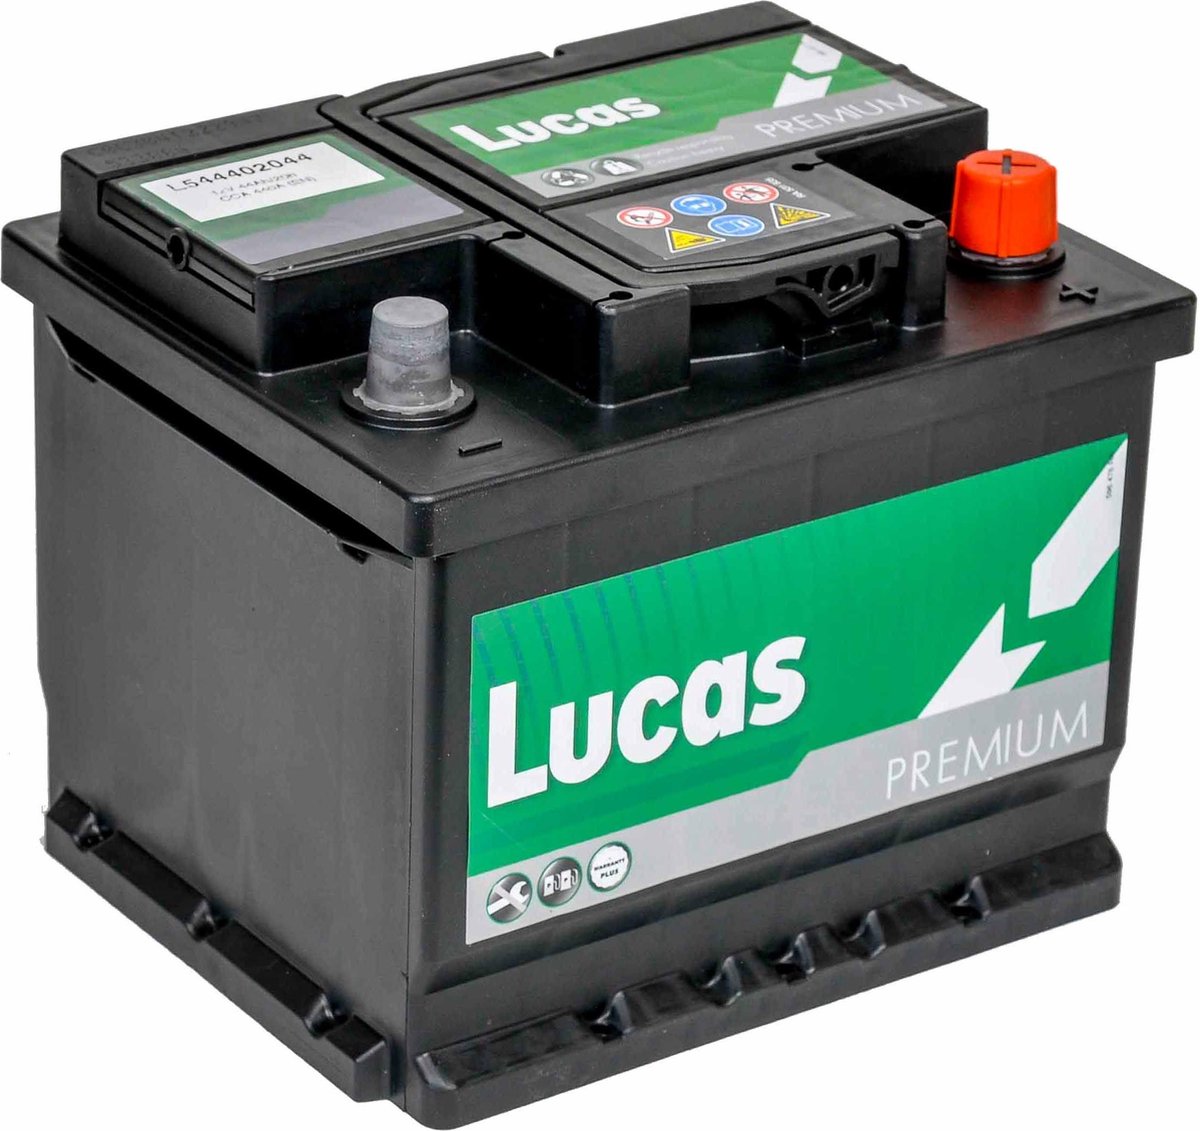 Lucas Premium Auto Accu | 12V 44AH 440 CCA | + Pool Rechts / - Pool Links  |... | bol.com